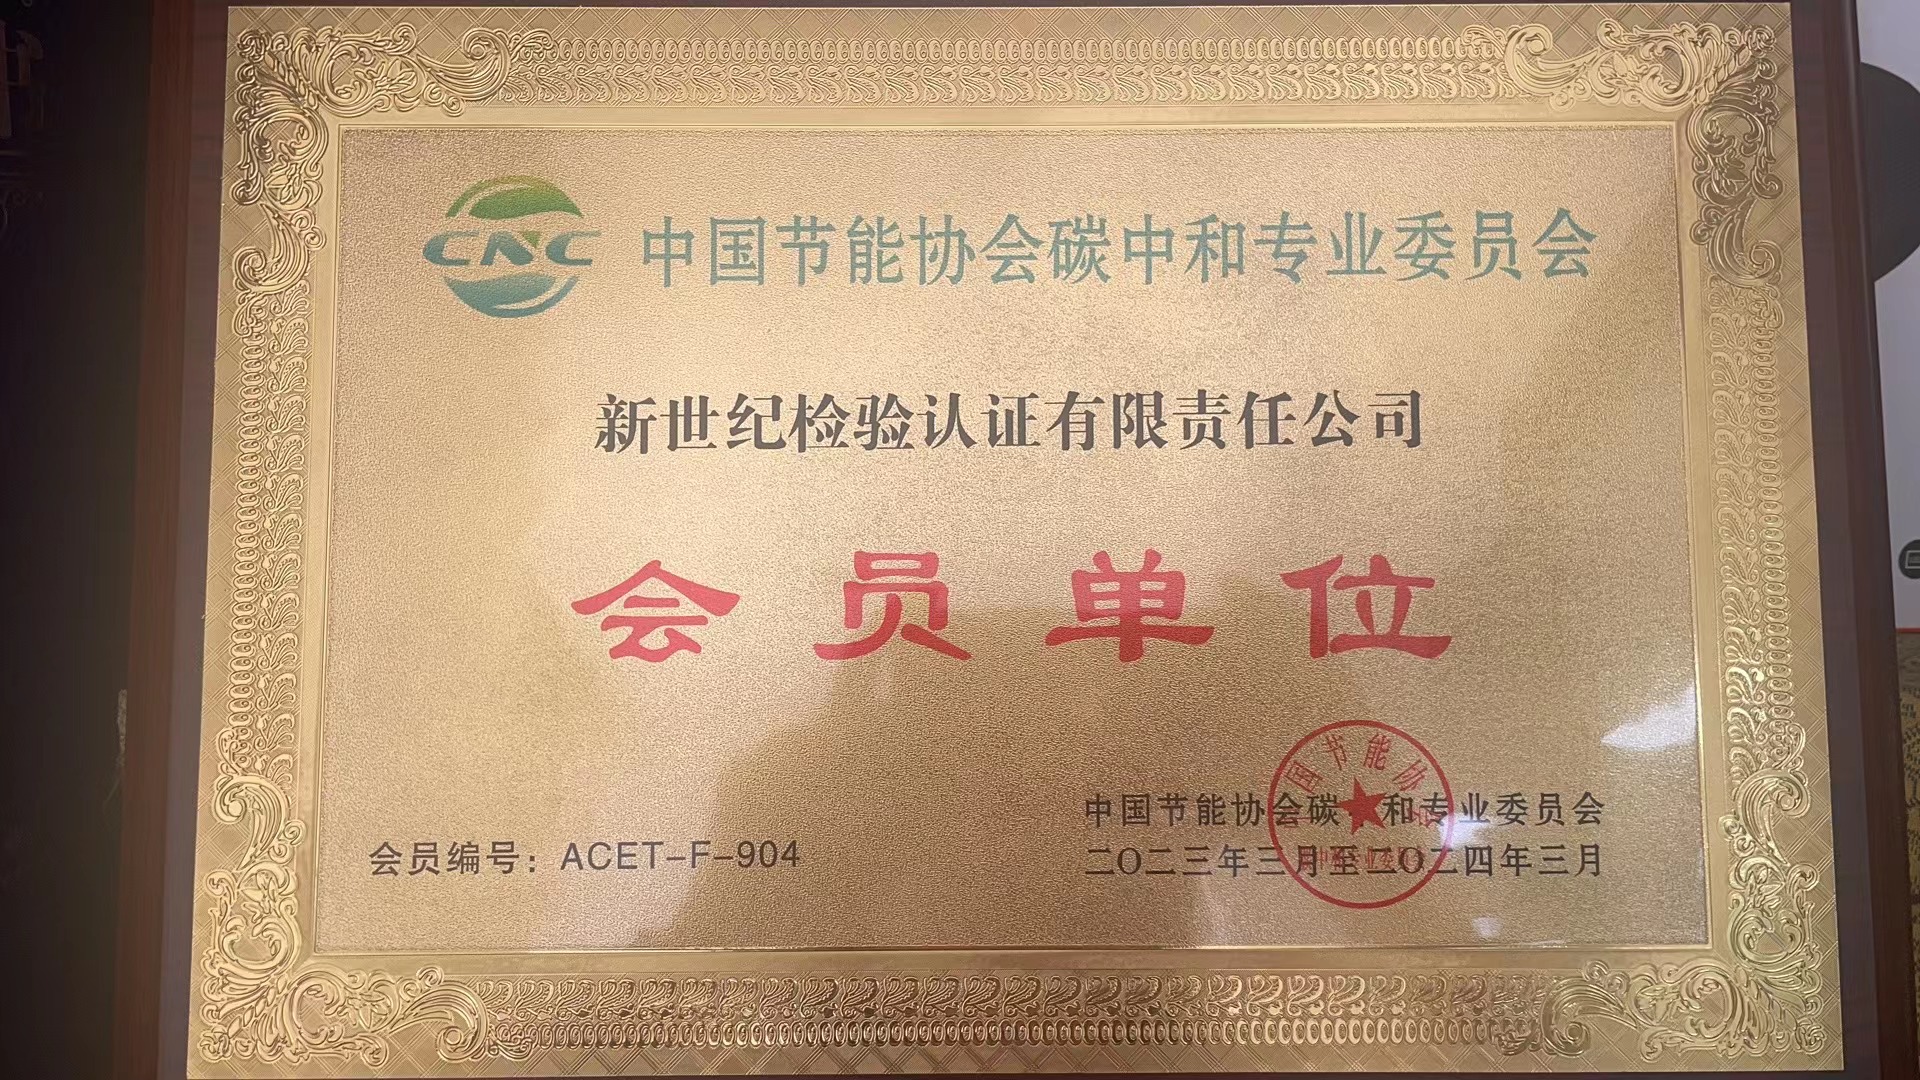 中國節能協會碳中和專業委員會會員單位